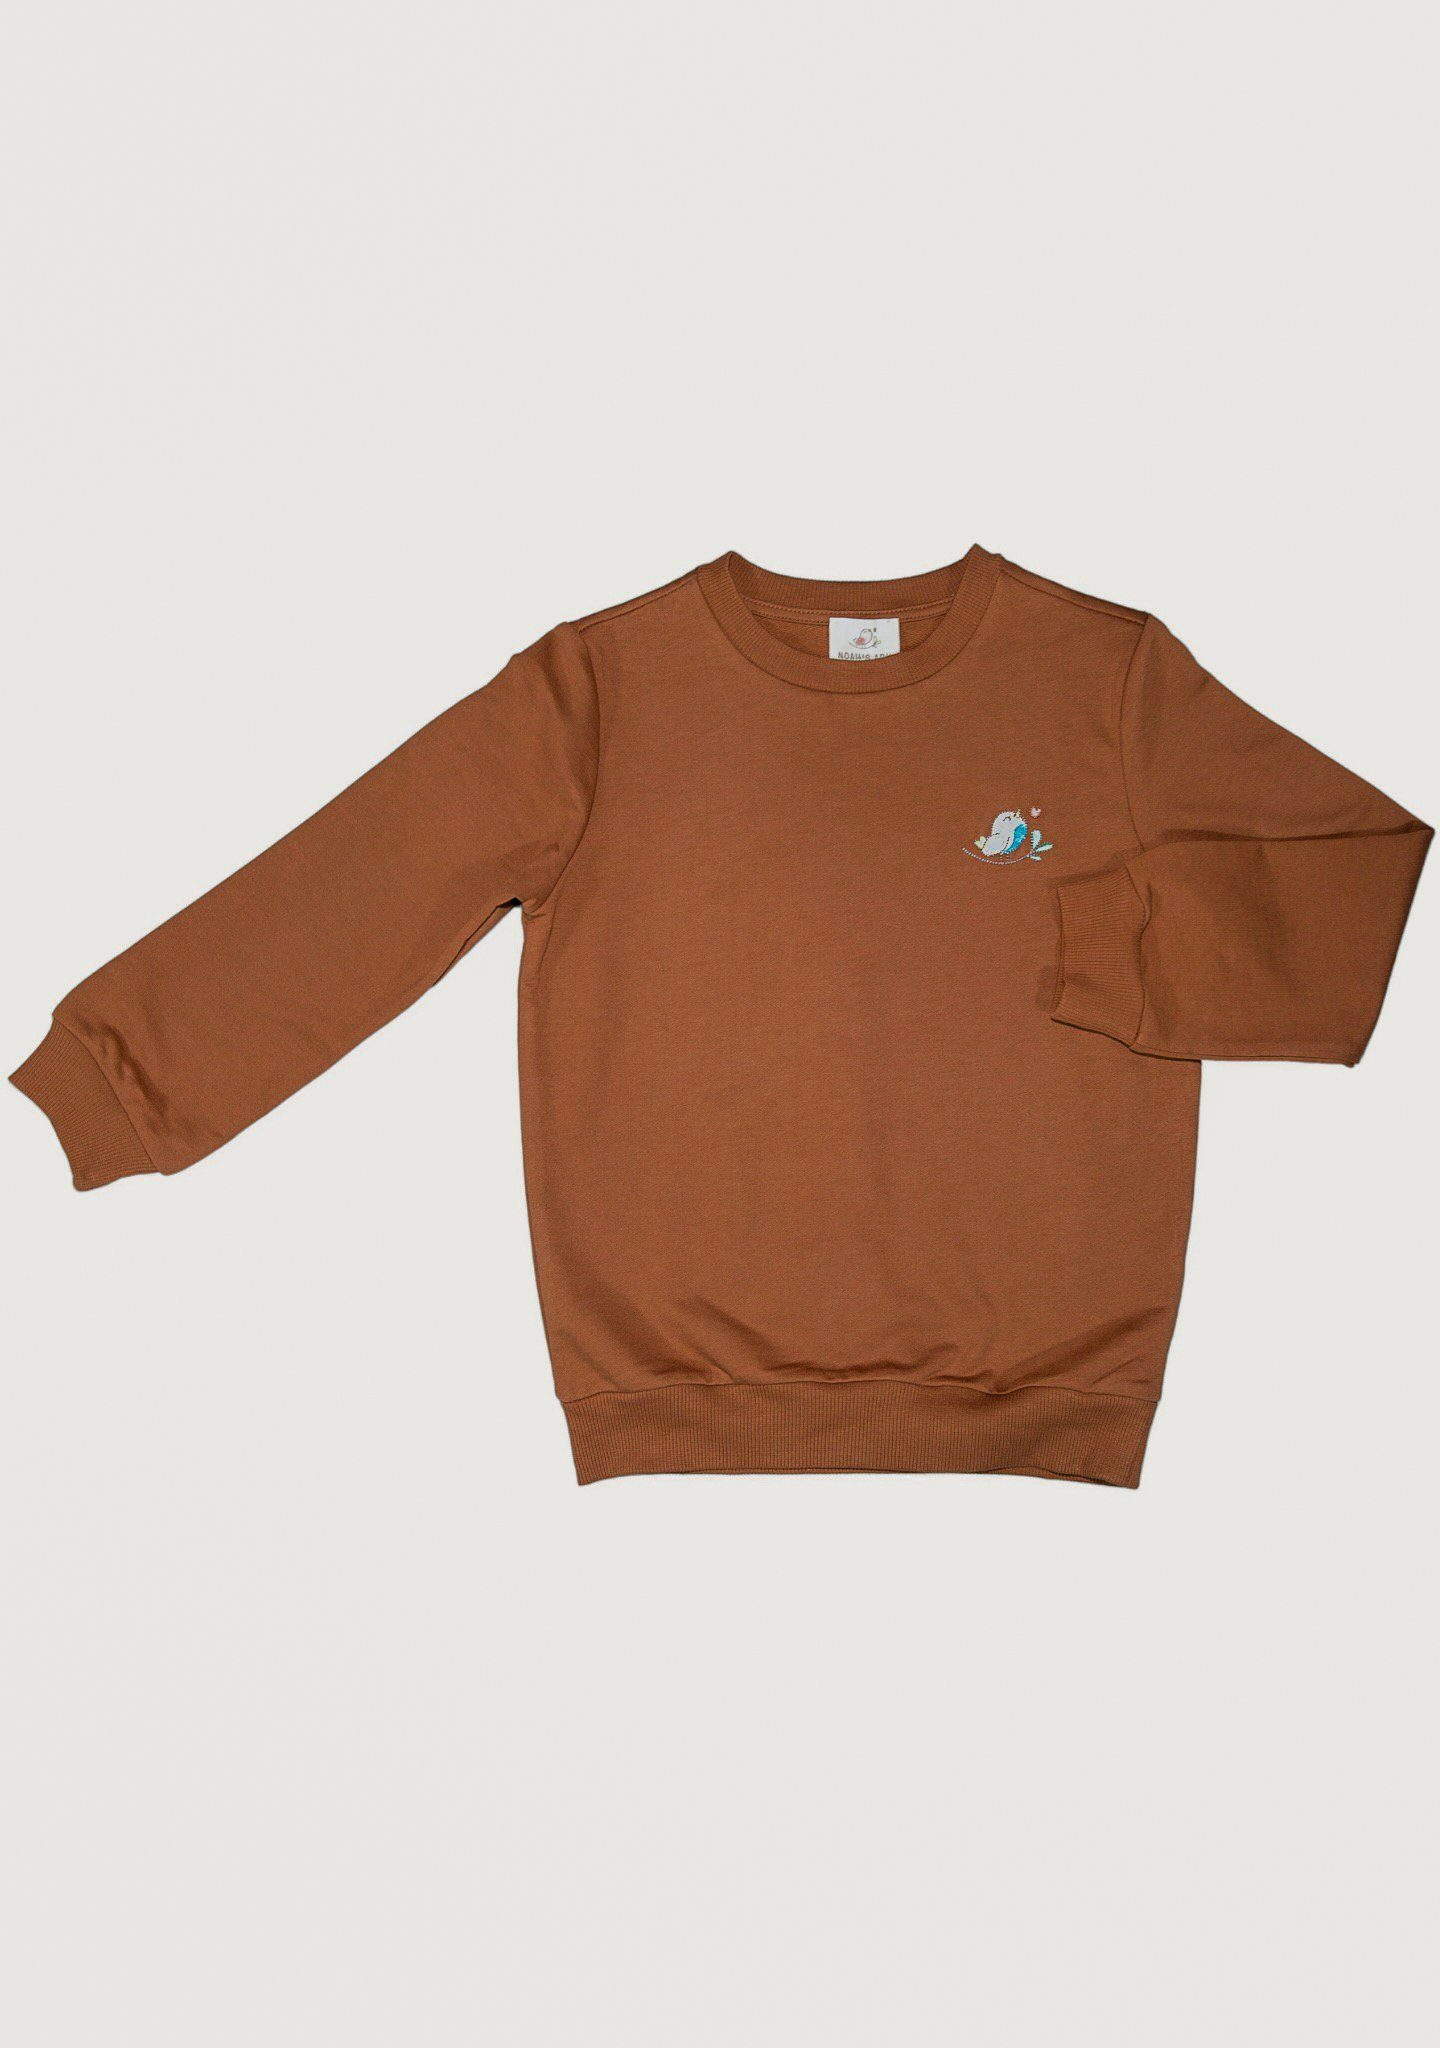 Noah's Ark Sweatshirt Baumwolle, für aus Baumwolle Unifarben Pullover 100% kastanienbraun Kinder in